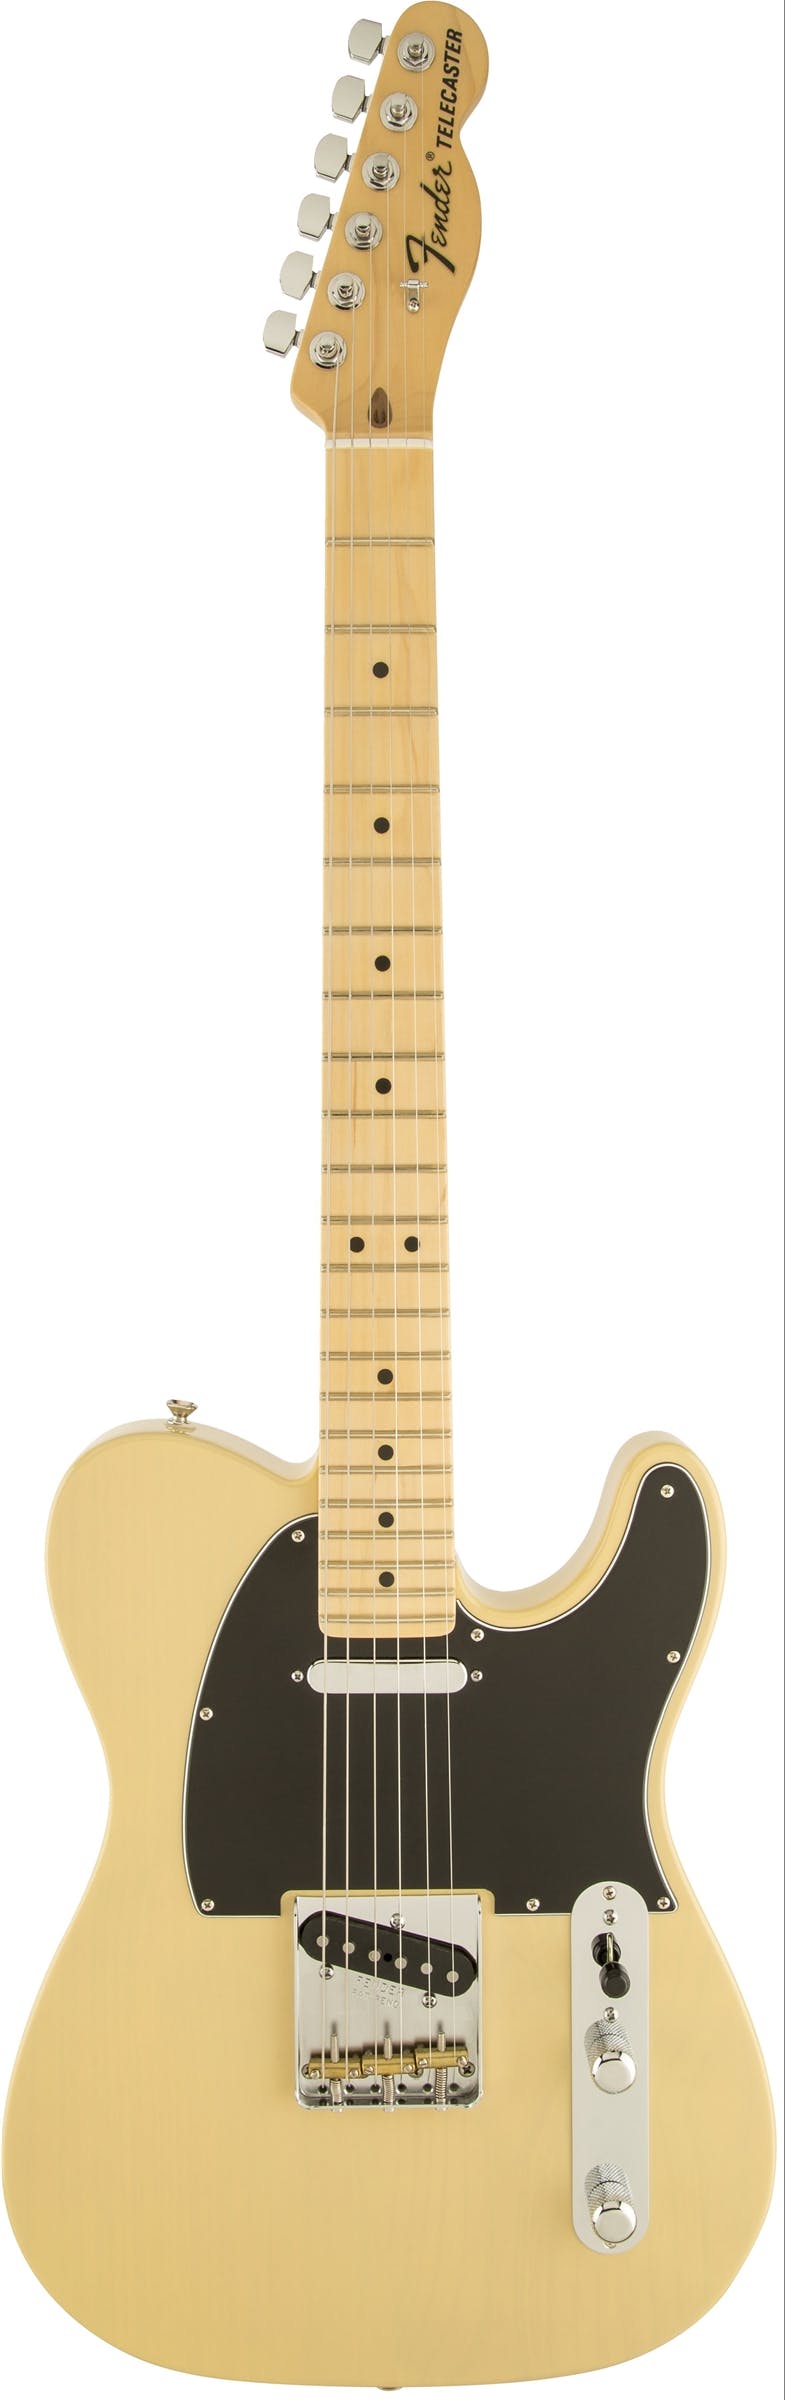 Fender American Special Tele Electric Guitar in Vintage Blonde